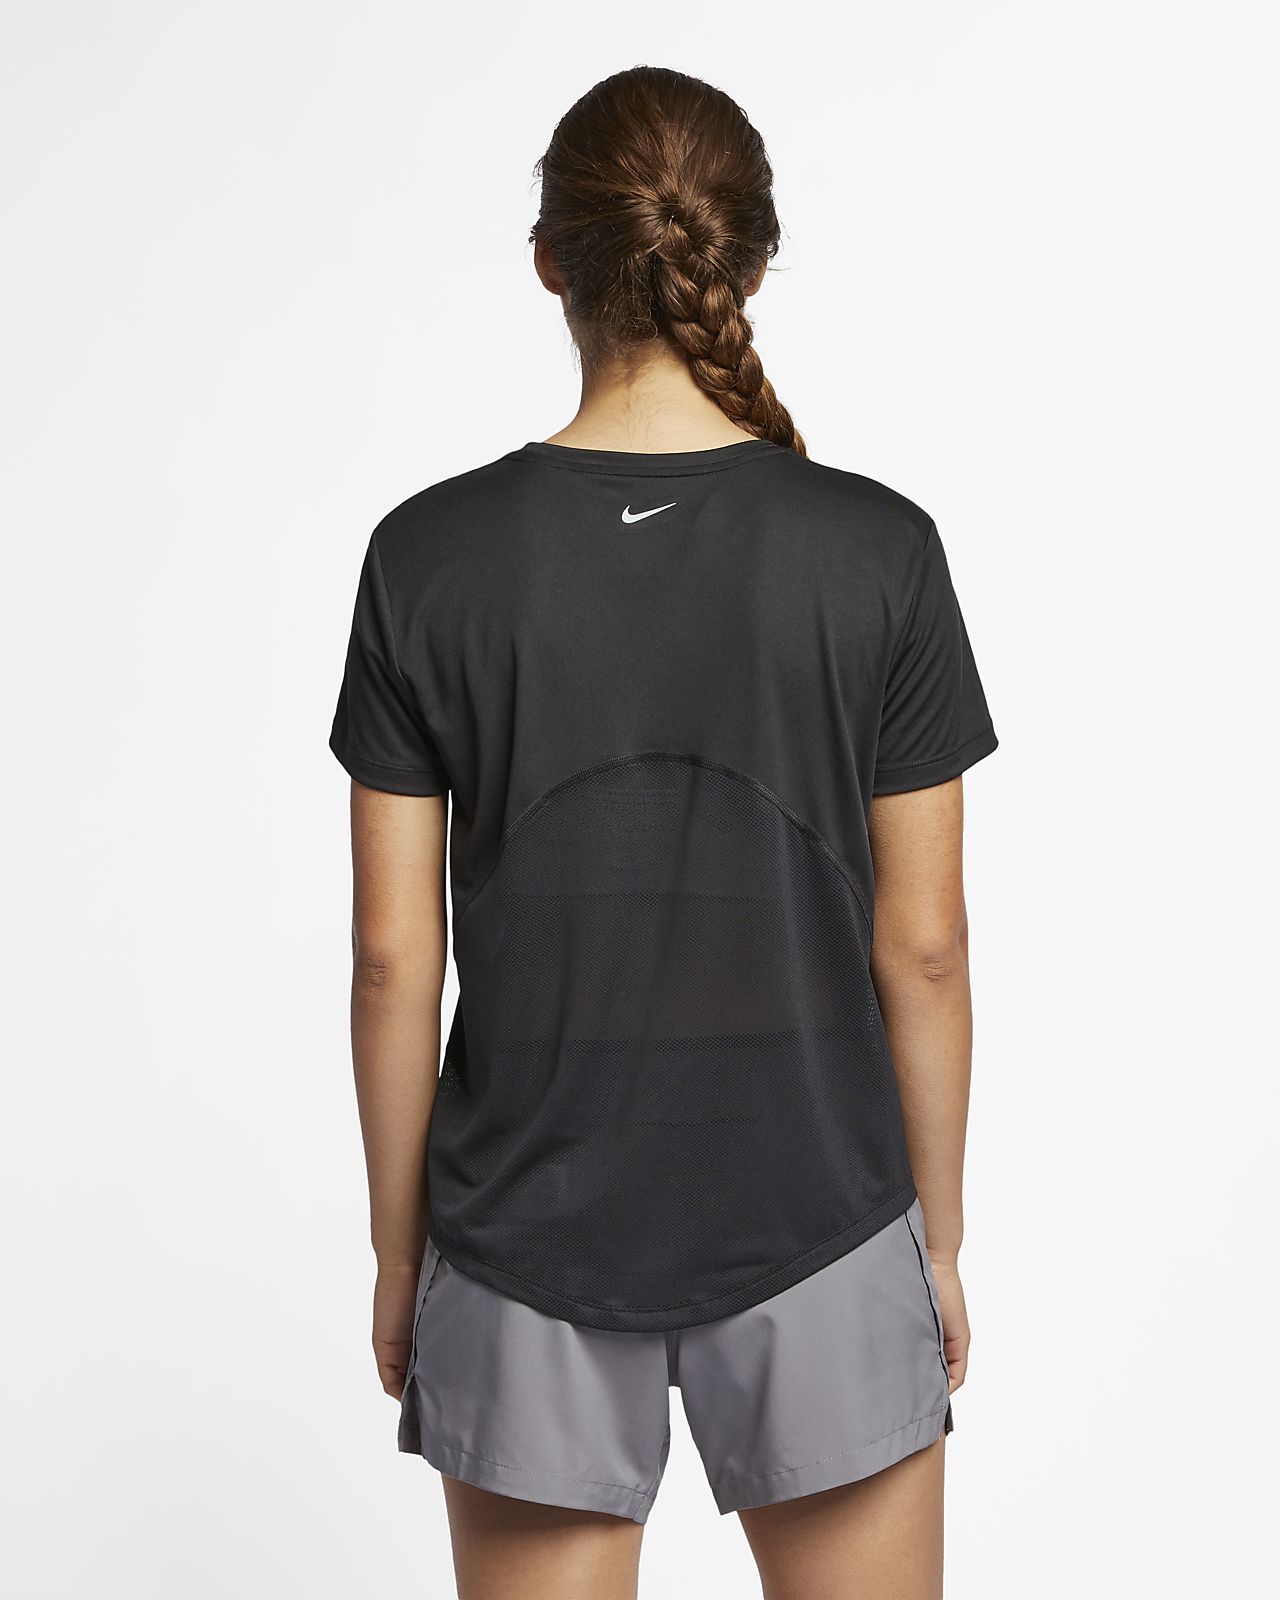 Nike Miler Women's Short-Sleeve Running Top. Nike EG